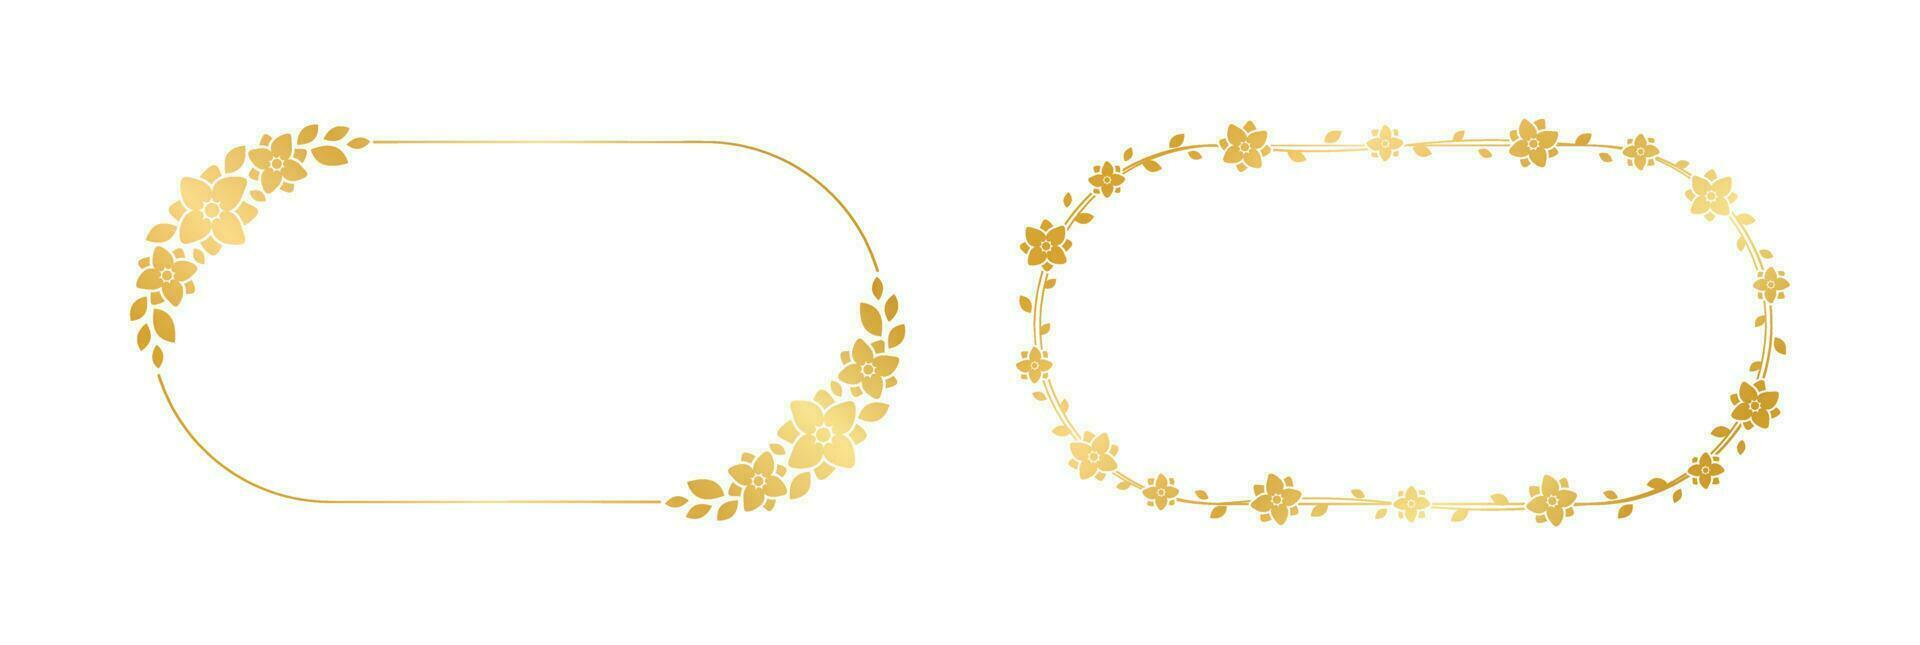 or ovale floral Cadre ensemble. luxe d'or Cadre frontière pour inviter, mariage, certificat. vecteur art avec fleurs et feuilles.